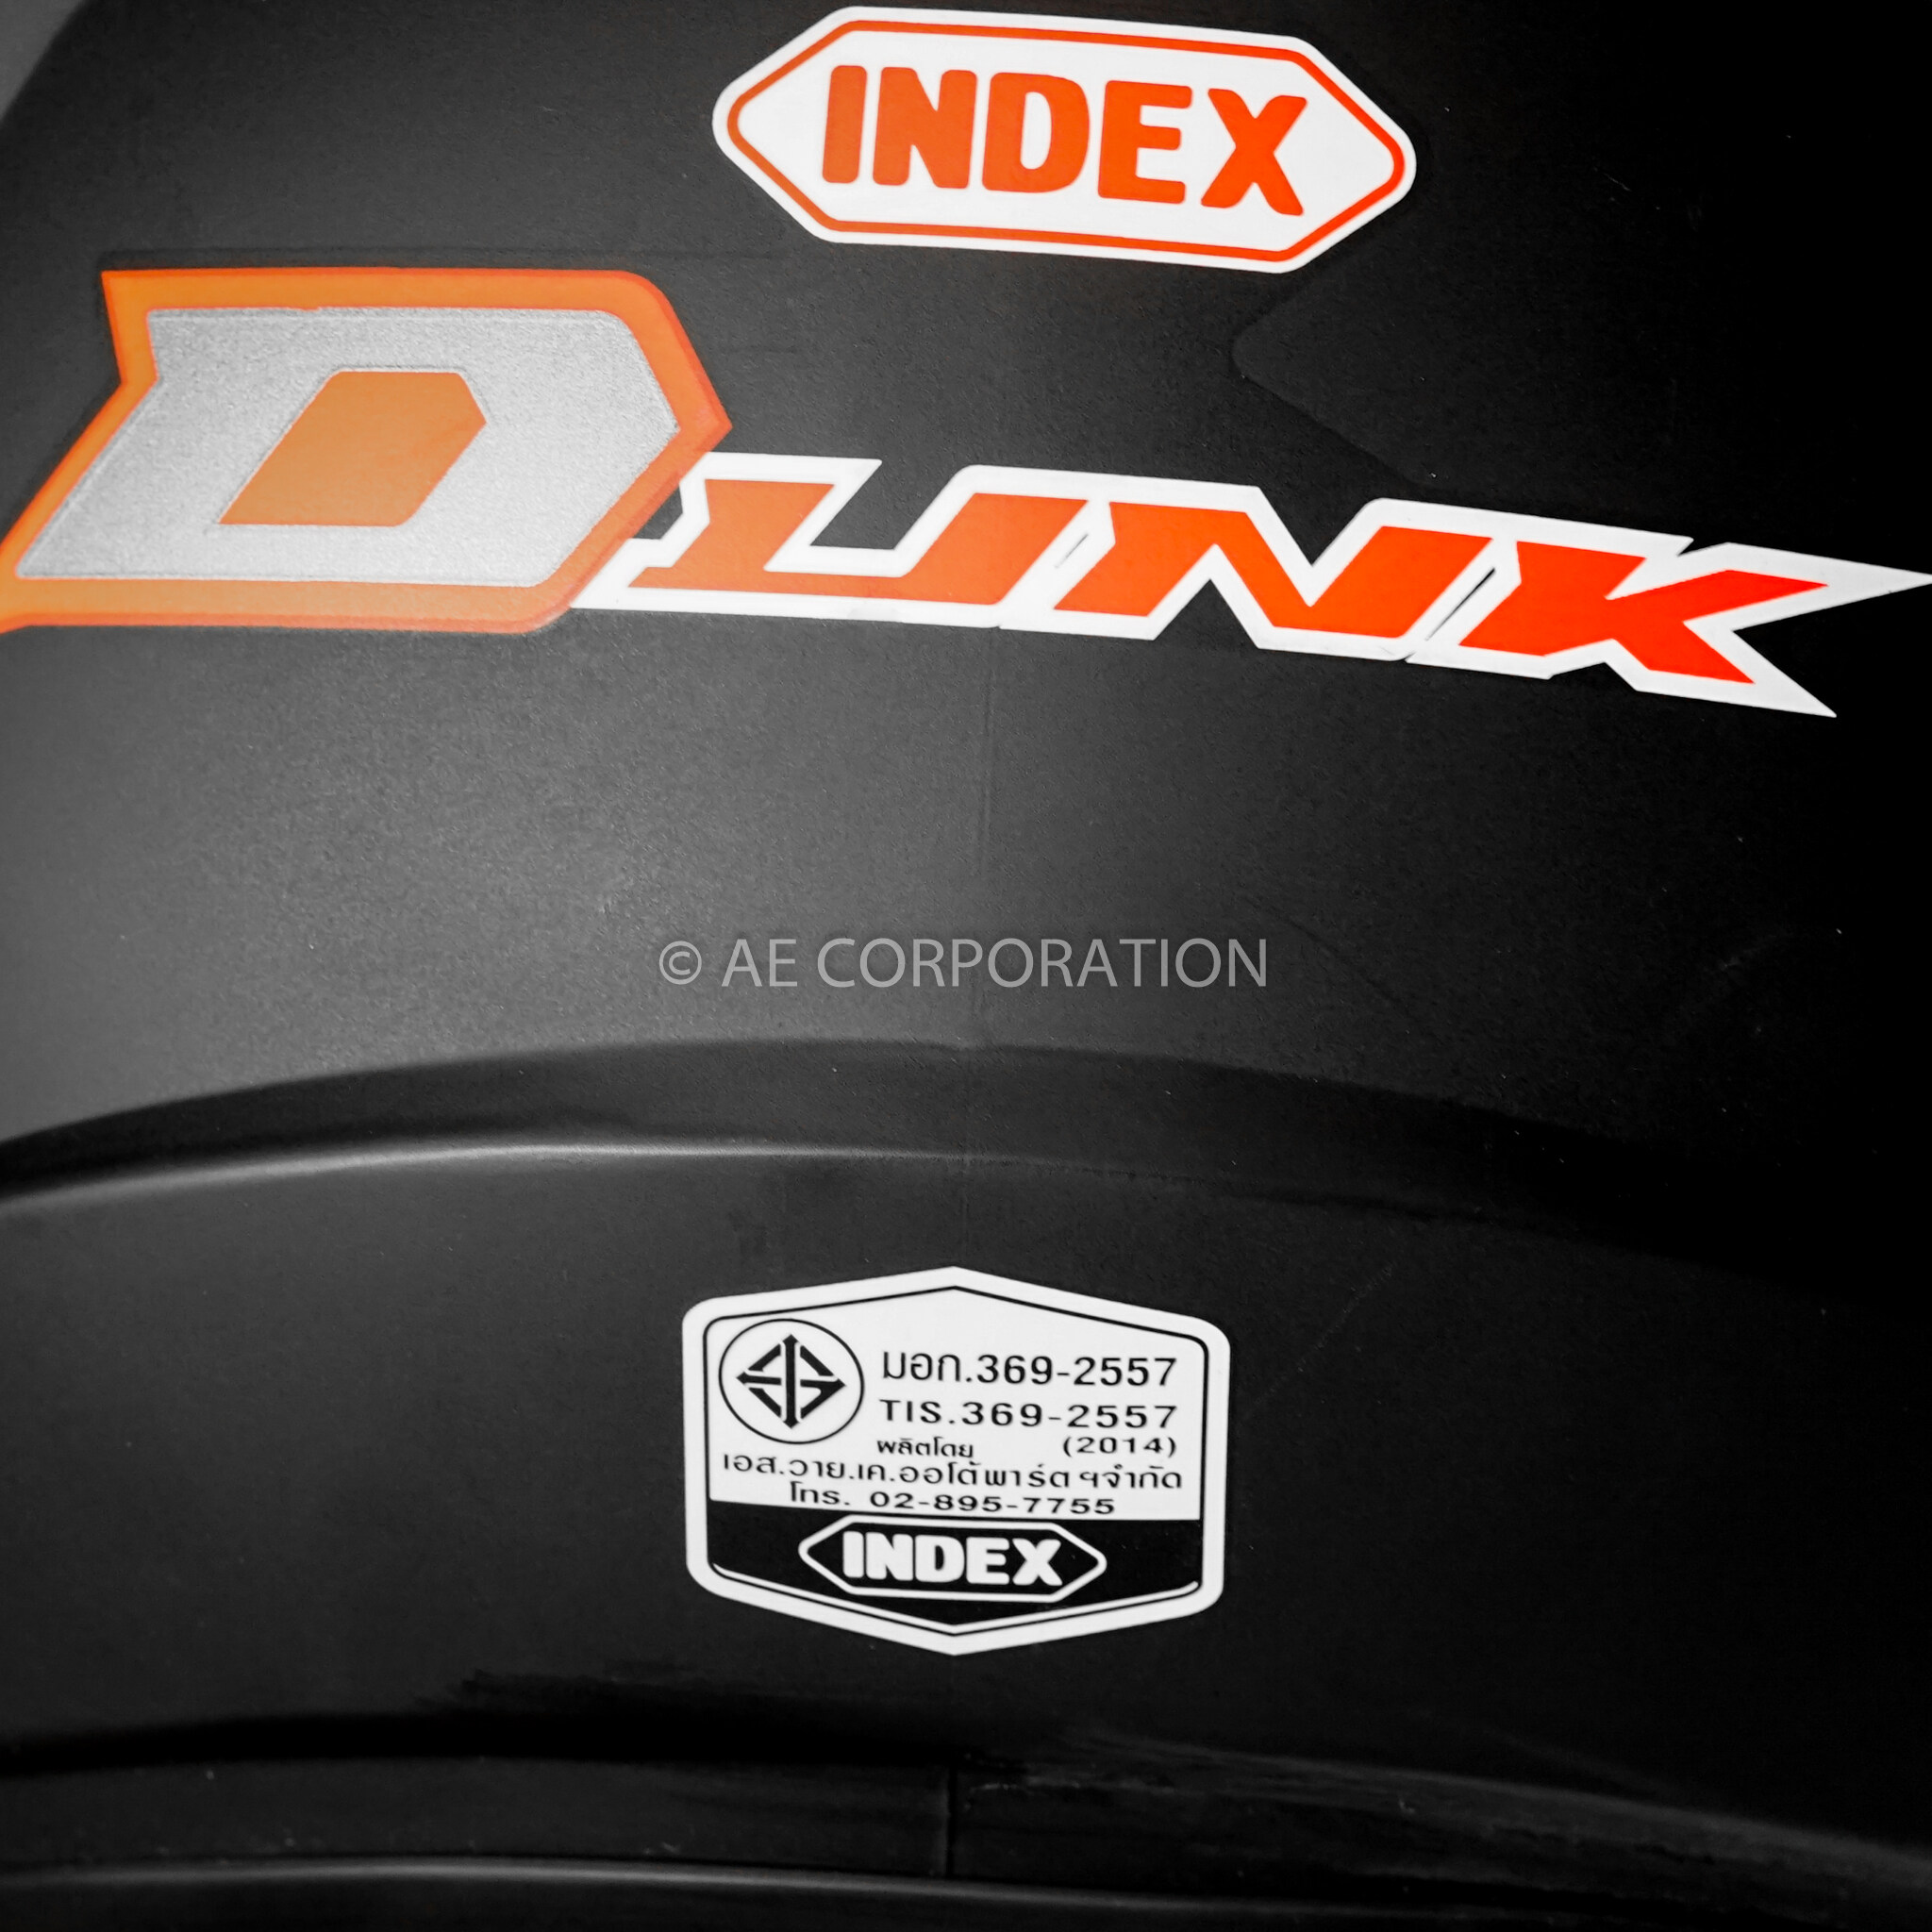 คำอธิบายเพิ่มเติมเกี่ยวกับ หมวกกันน็อค INDEX DUNK NEW หมวกกันน็อก ของแท้100% ไซต์L สีเทา 300IQ Racing